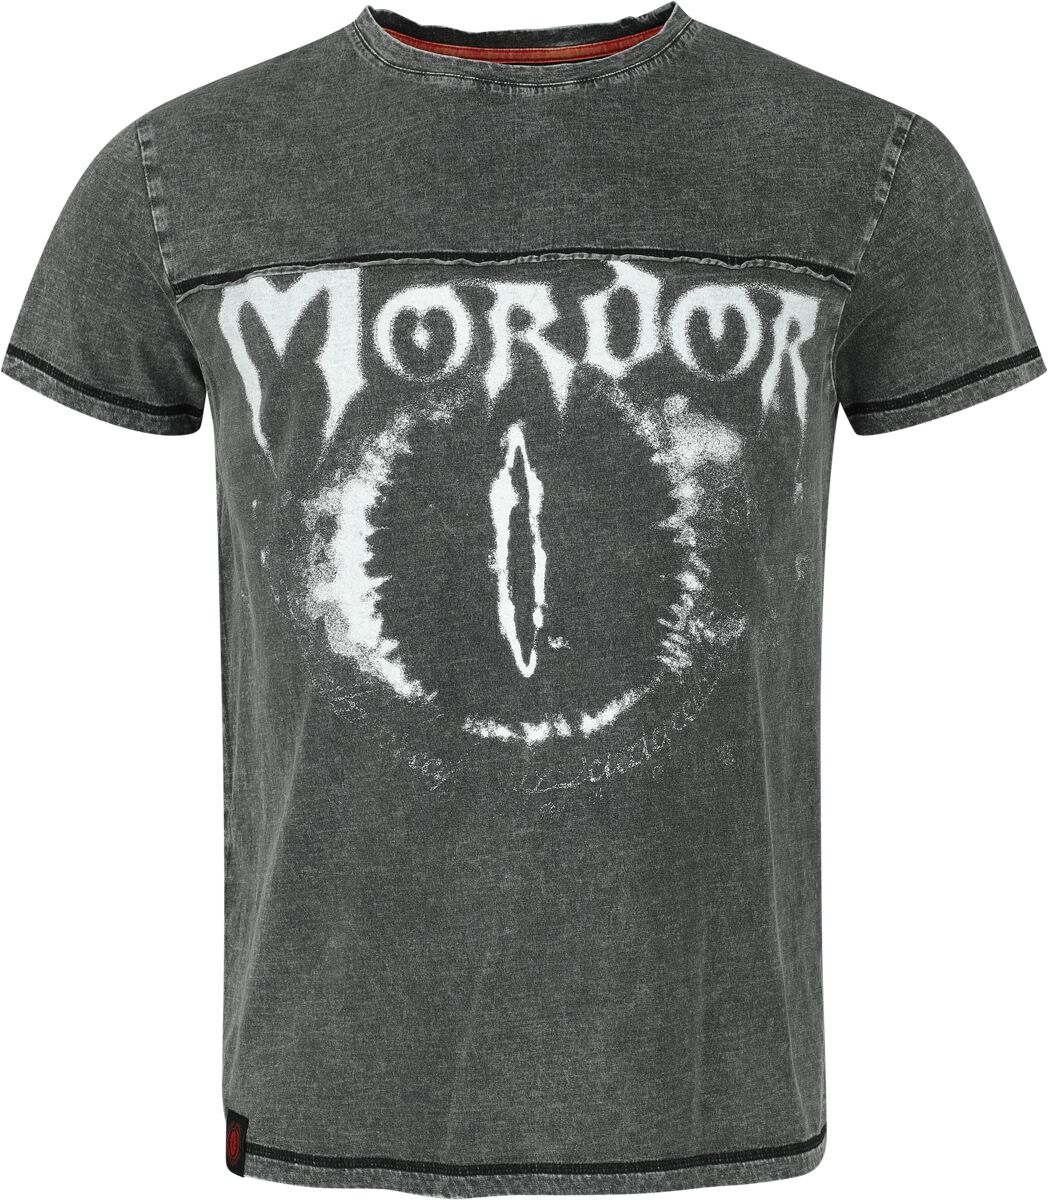 Der Herr der Ringe T-Shirt - Mordor - S bis XXL - für Männer - Größe S - charcoal  - EMP exklusives Merchandise!